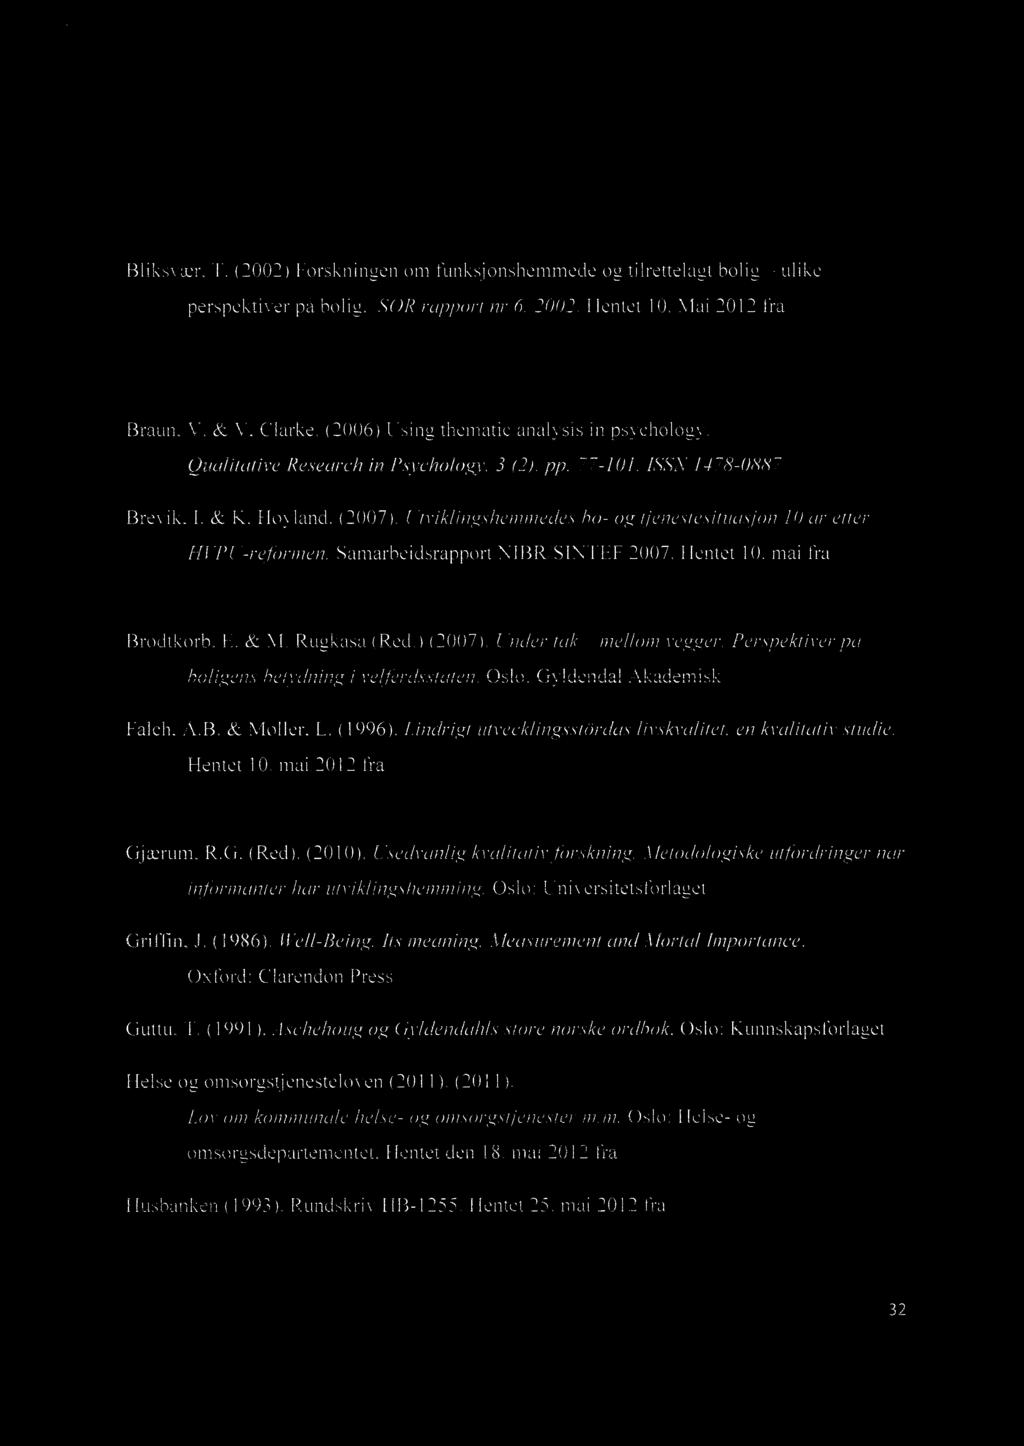 Referanser Bliksvær, T. (2002) Forskningen om funksjonshemmede og tilrettelagt bolig ulike perspektiver på bolig. SOR rapport nr 6. 2002. Hentet 10. Mai 2012 fra htt ://www.samordnin sradet.